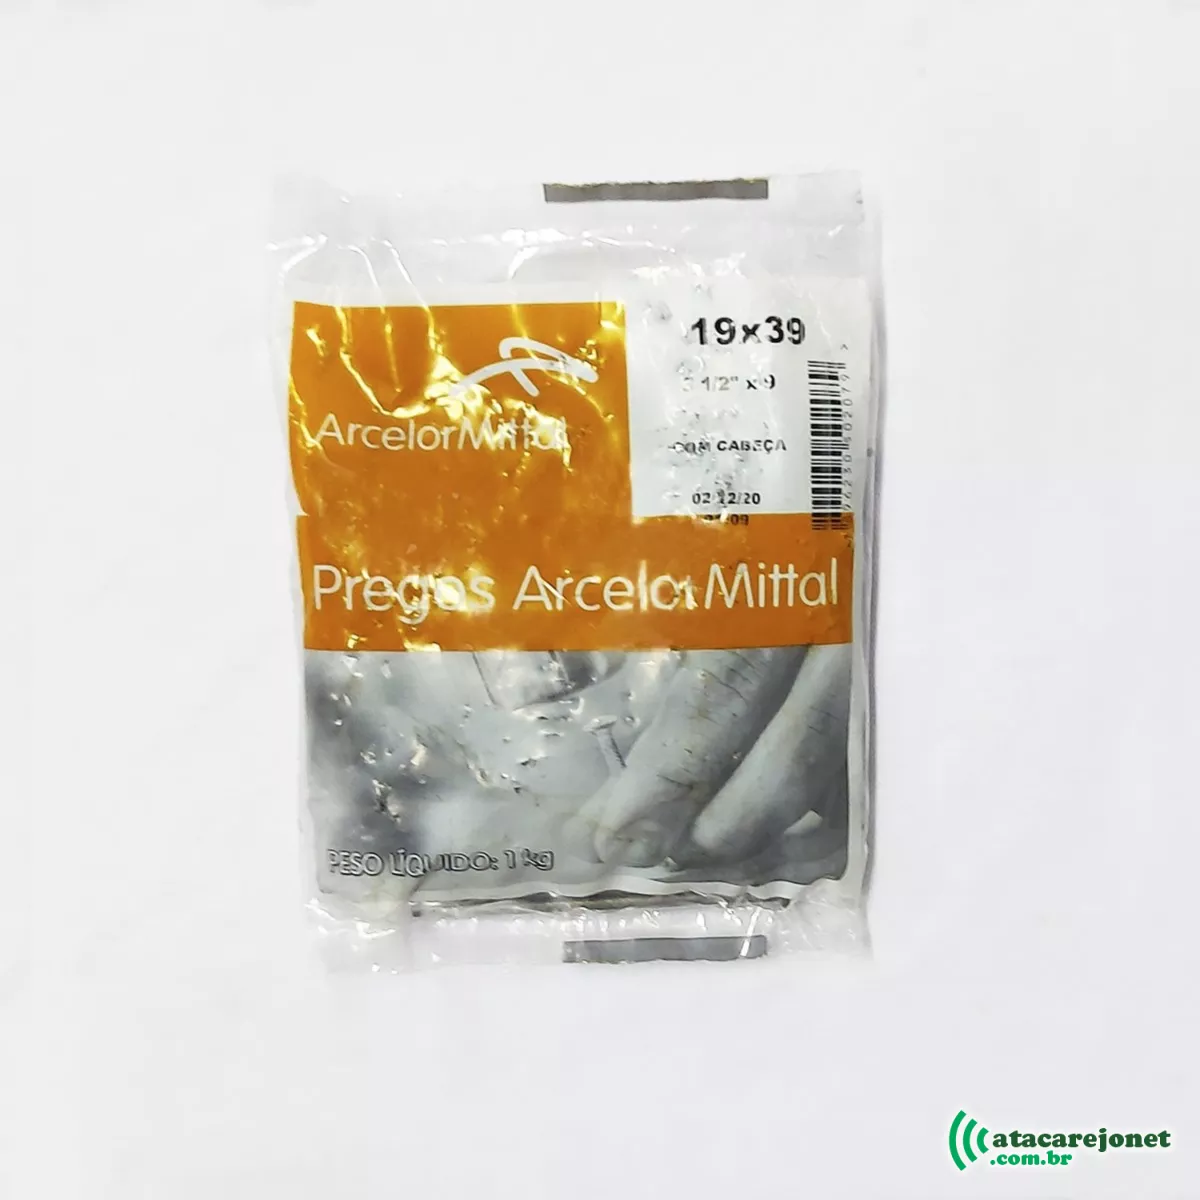 Prego Polido 19x39 com Cabeça Embalagem 1Kg - Arcelor Mittal